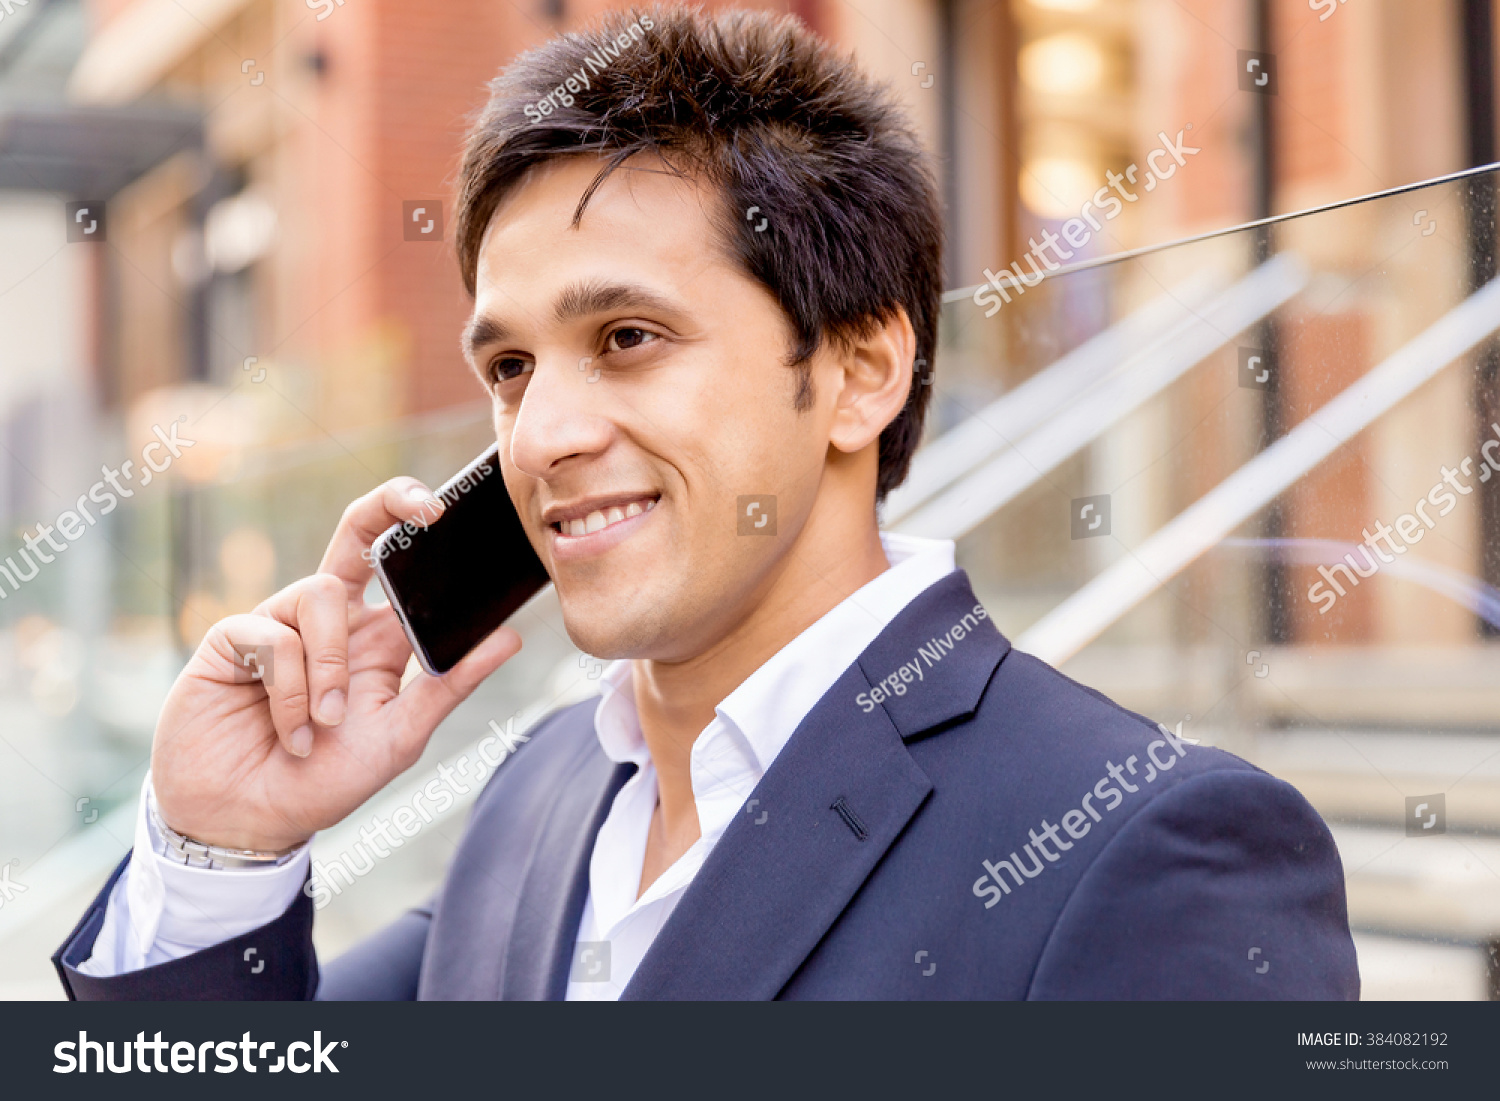 Portrait of confident businessman outdoors #384082192